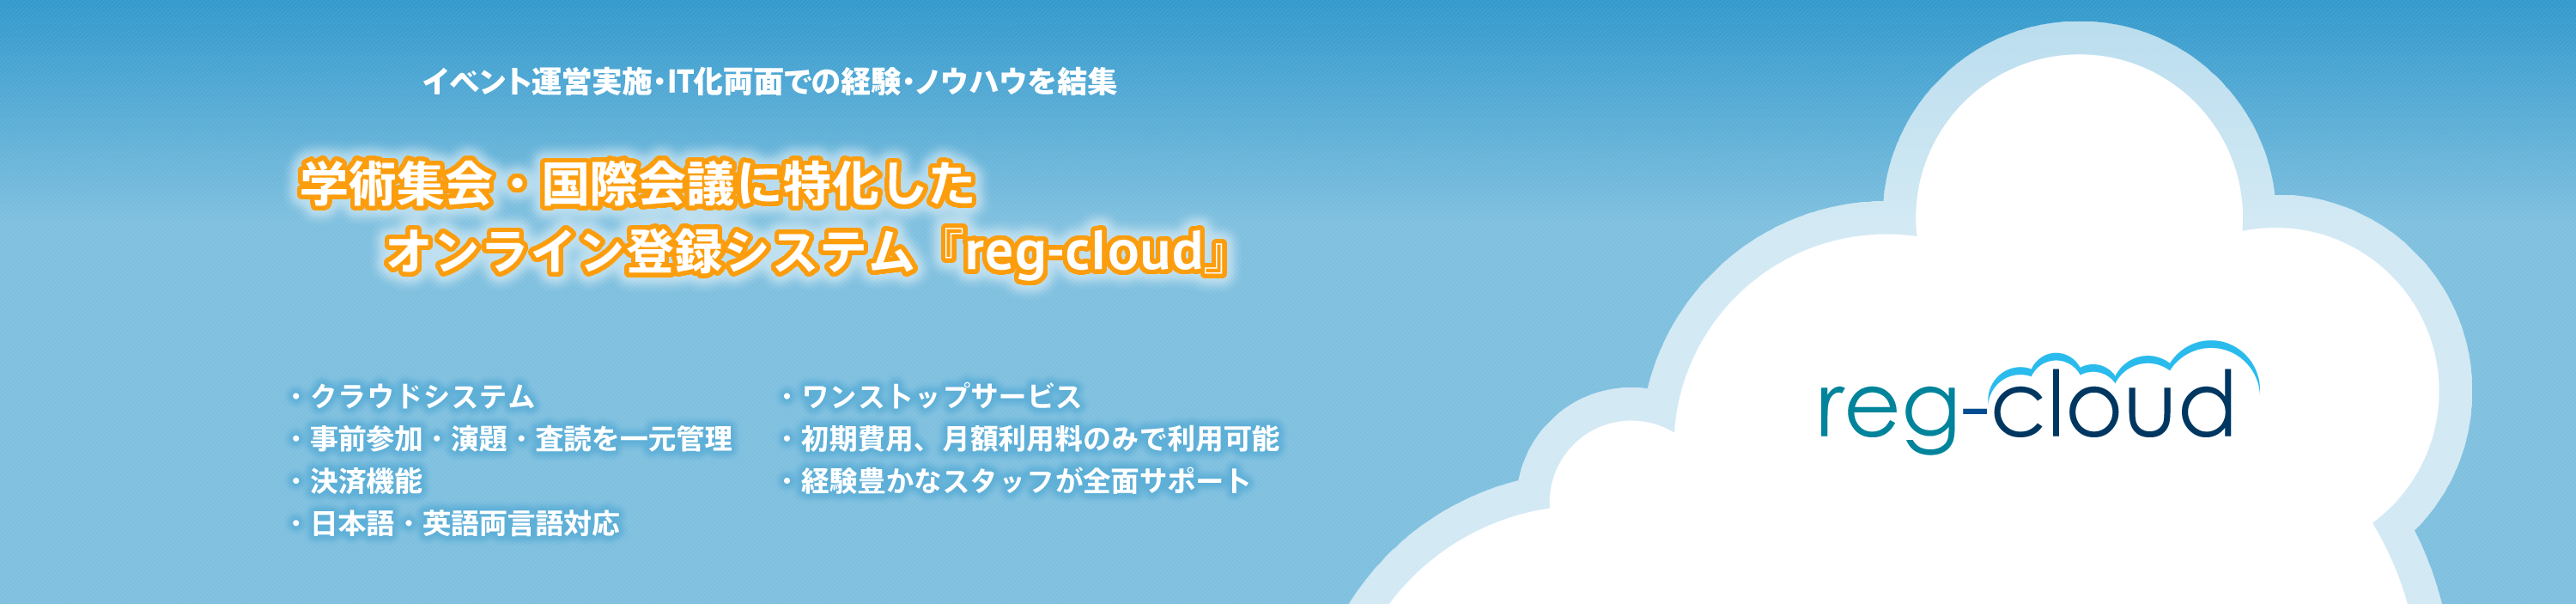 オンライン登録システムreg-cloud